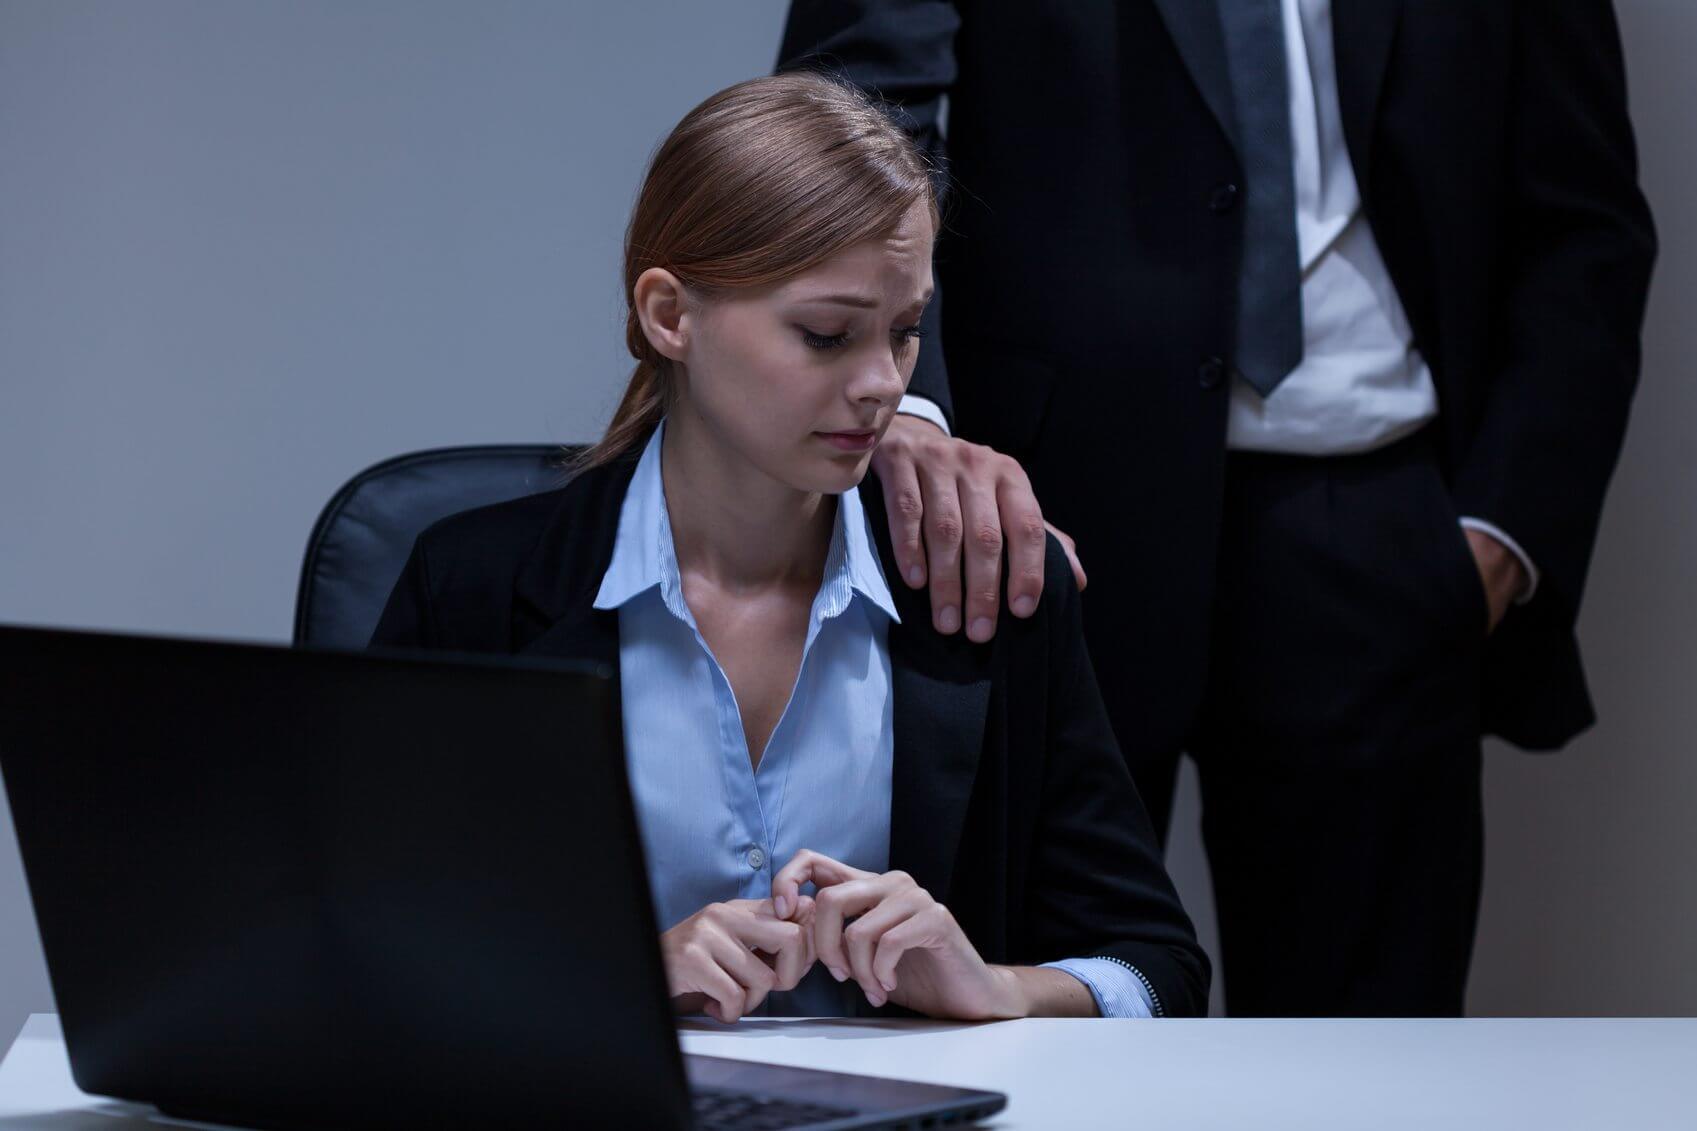 Сексуальные домогательства на работе: как быть?